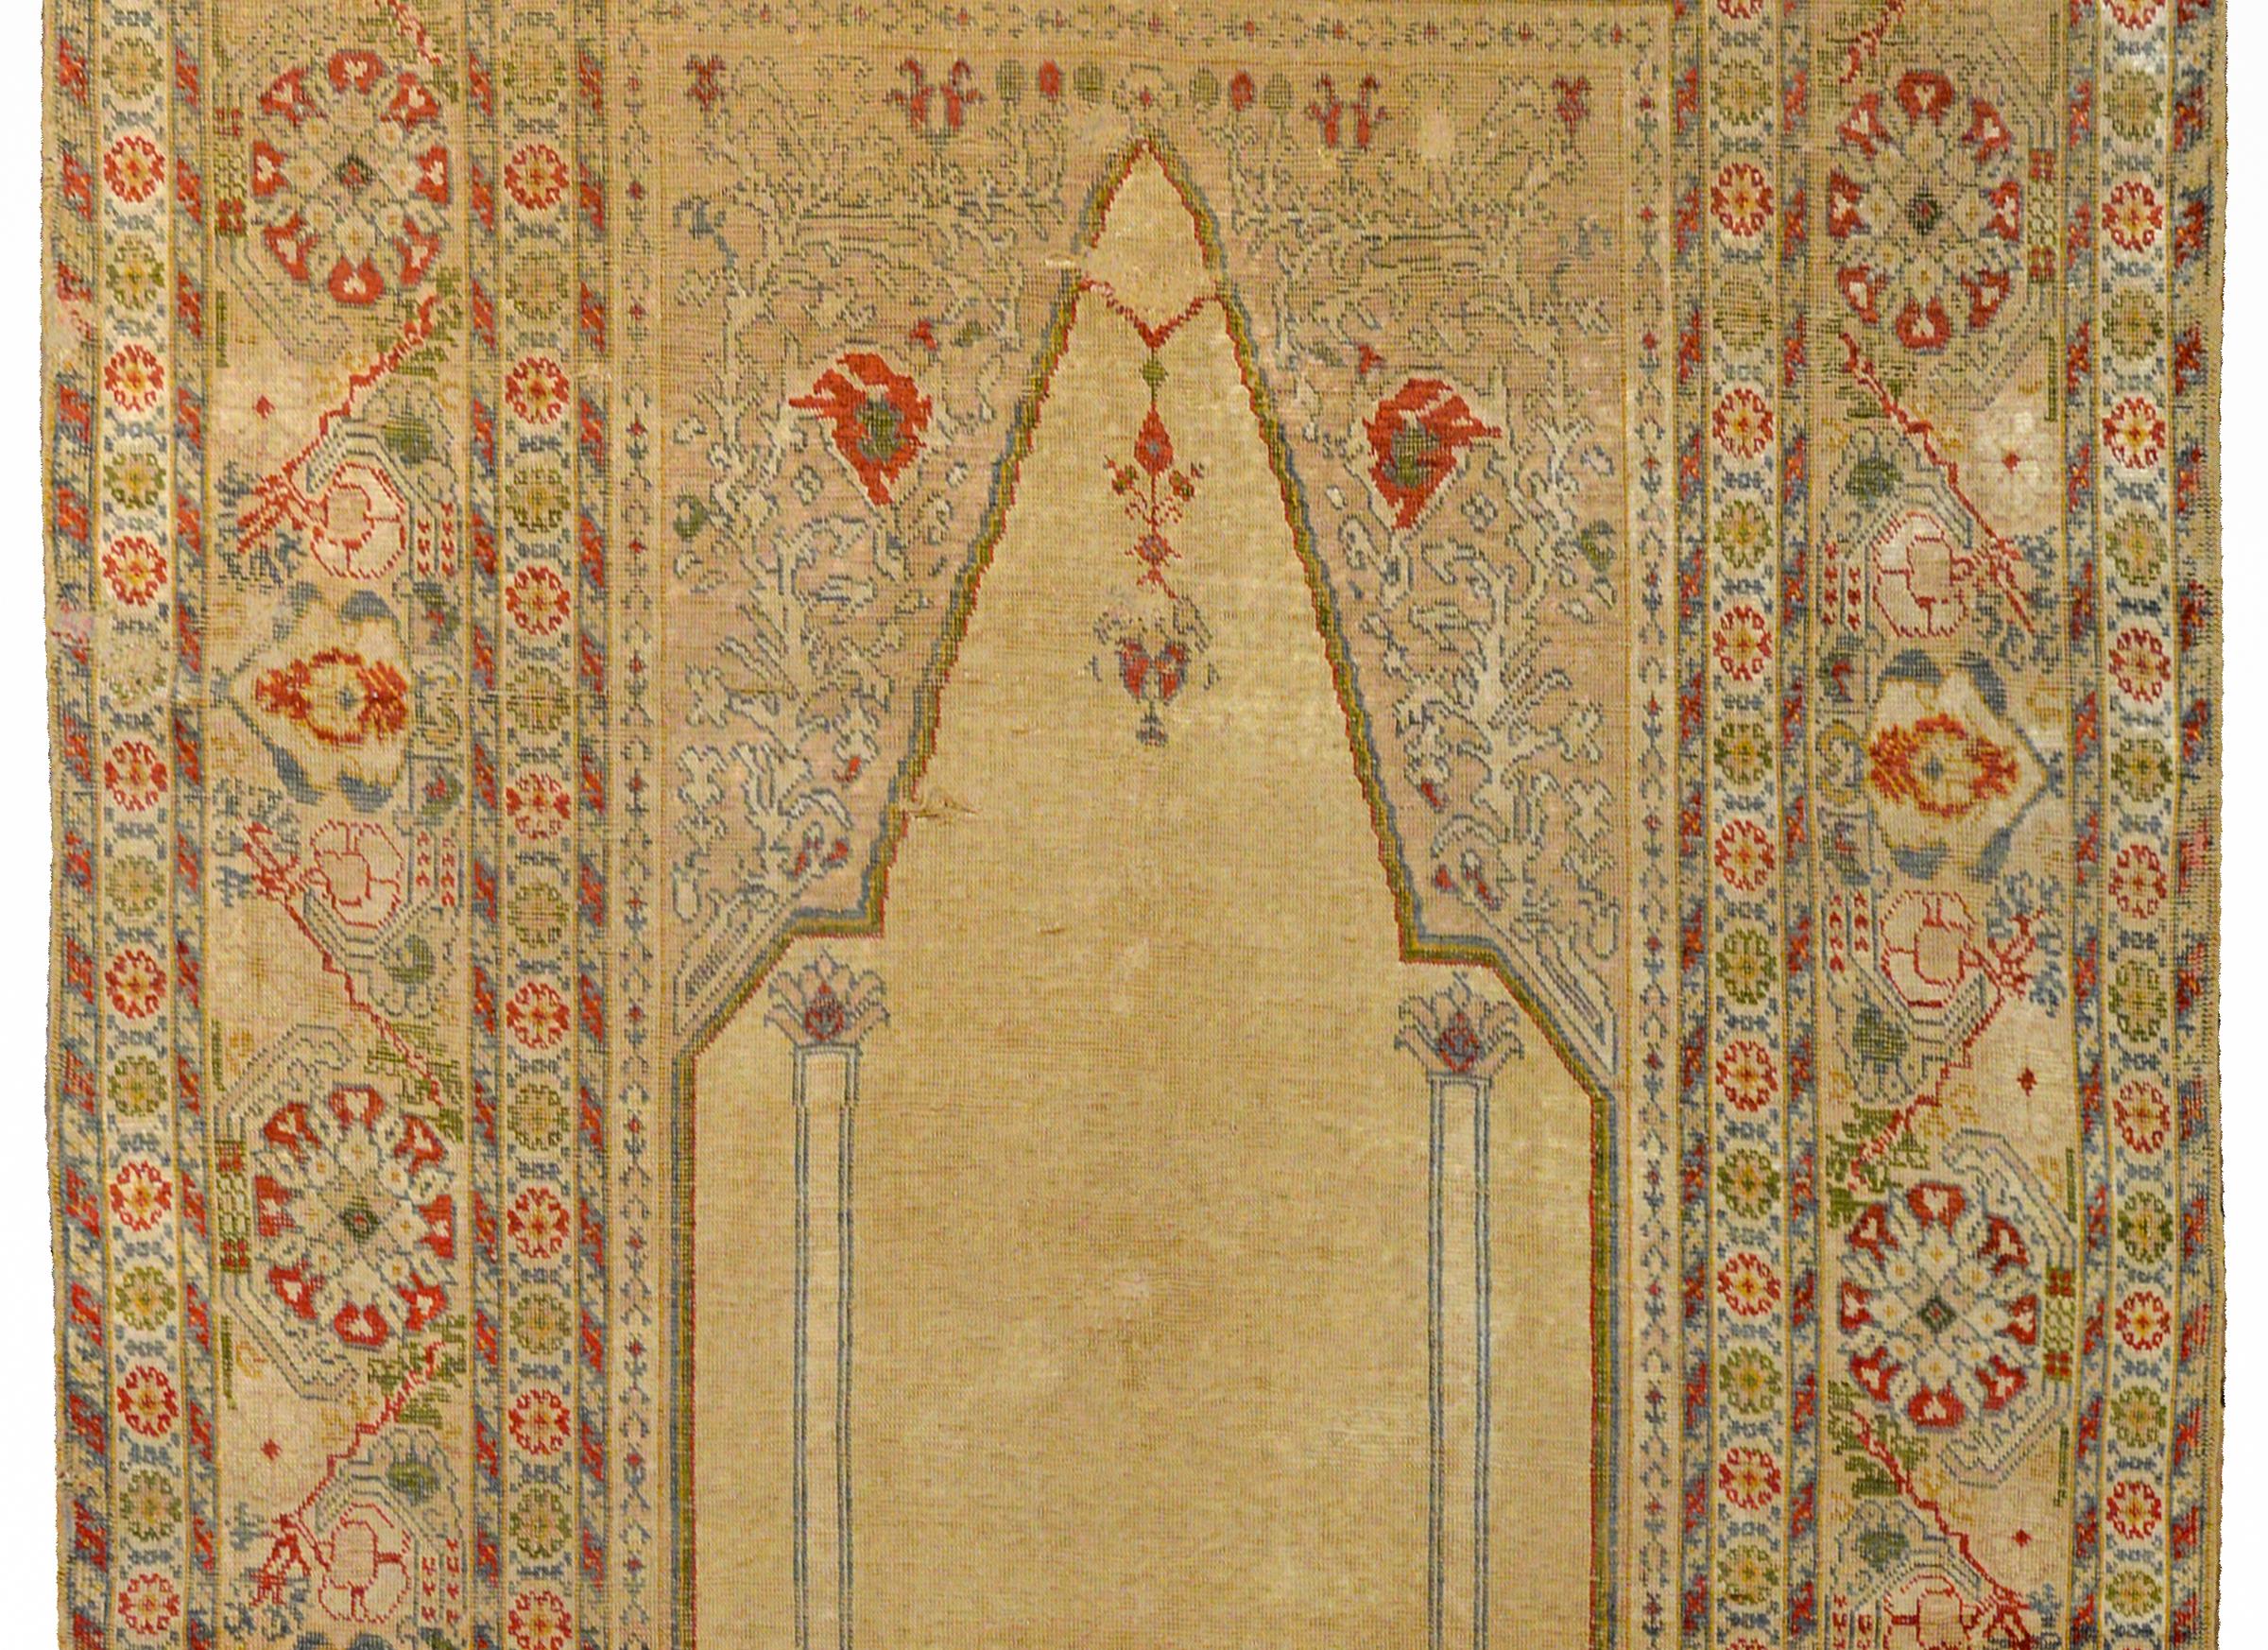 Remarquable tapis de prière turc en soie tissé à la main, datant du début du XXe siècle, présentant un magnifique motif de fleurs à grande échelle, de vignes et de feuilles défilantes, tissé en corail, bleu pâle, vert et or, le tout sur un fond